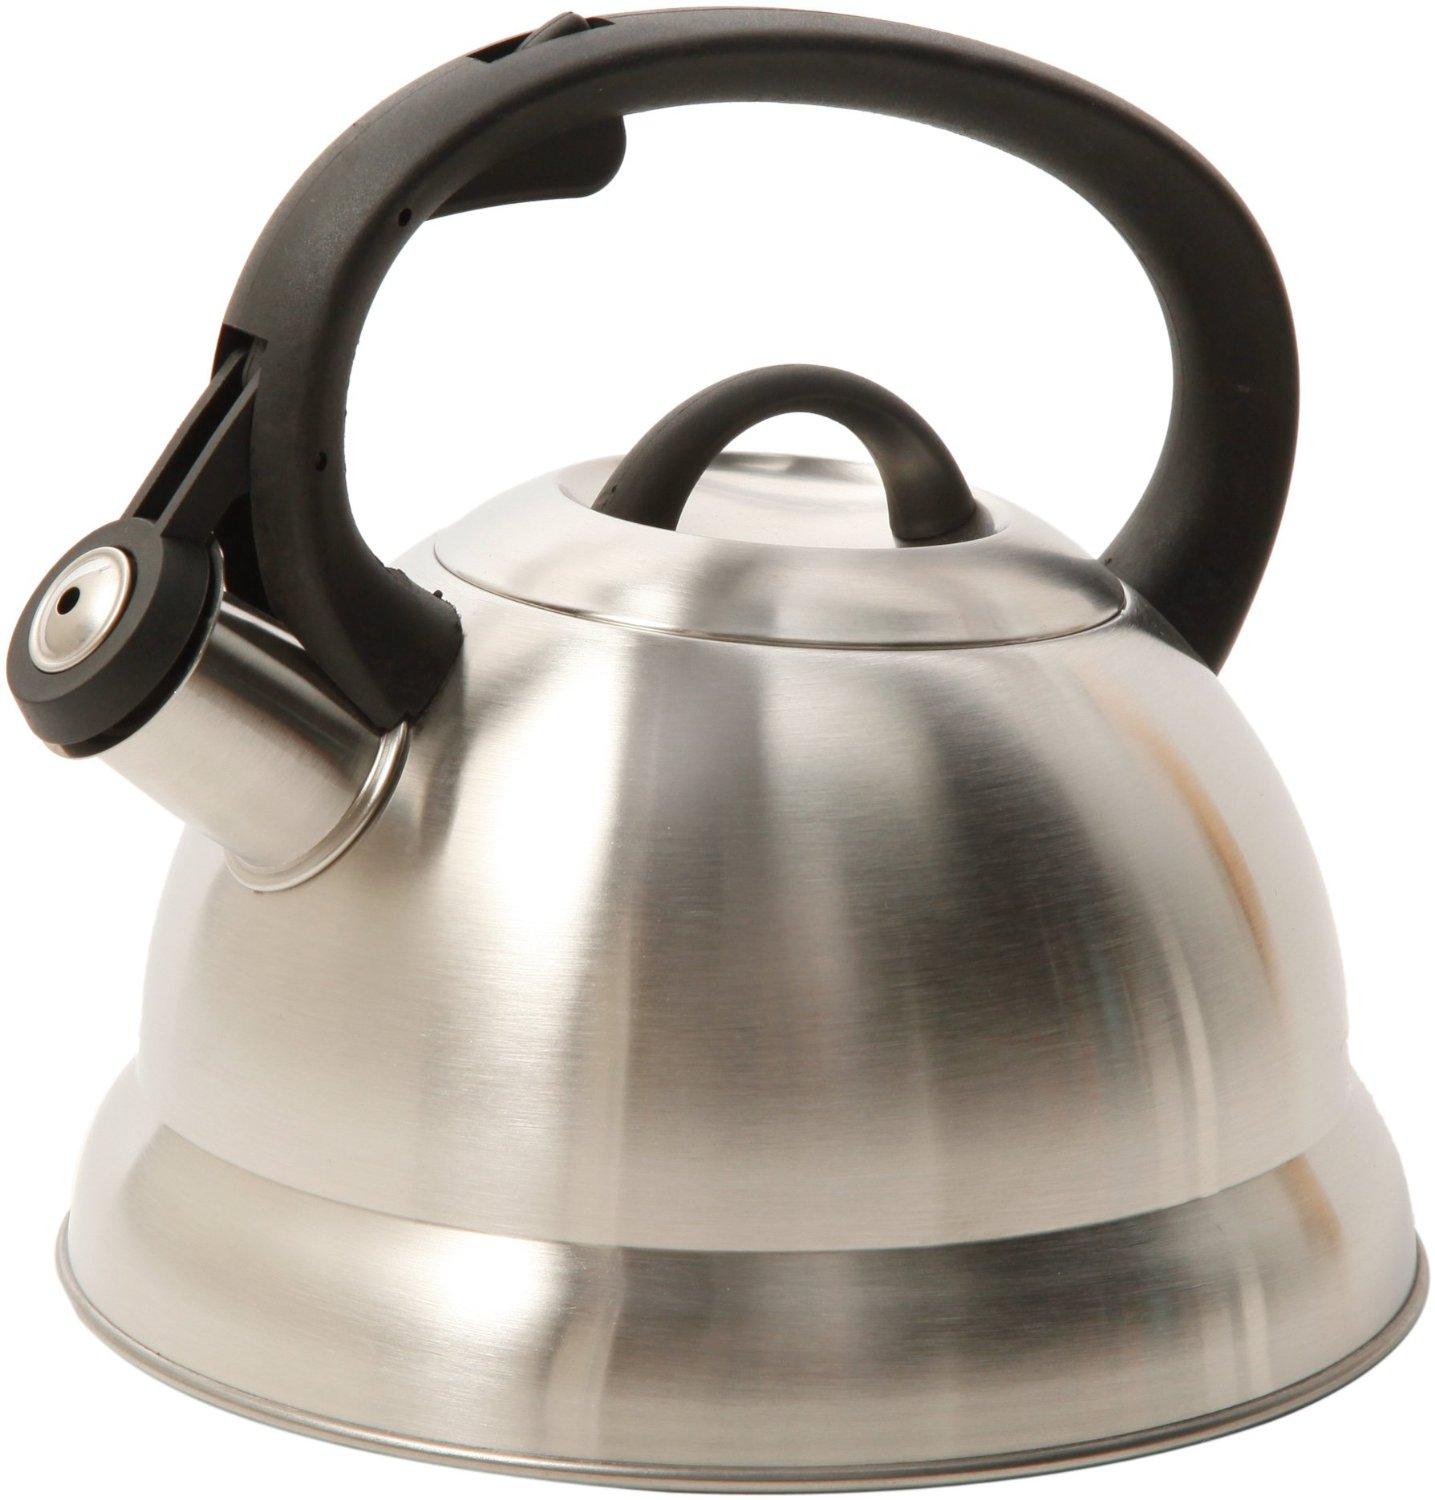 wirecutter teapot